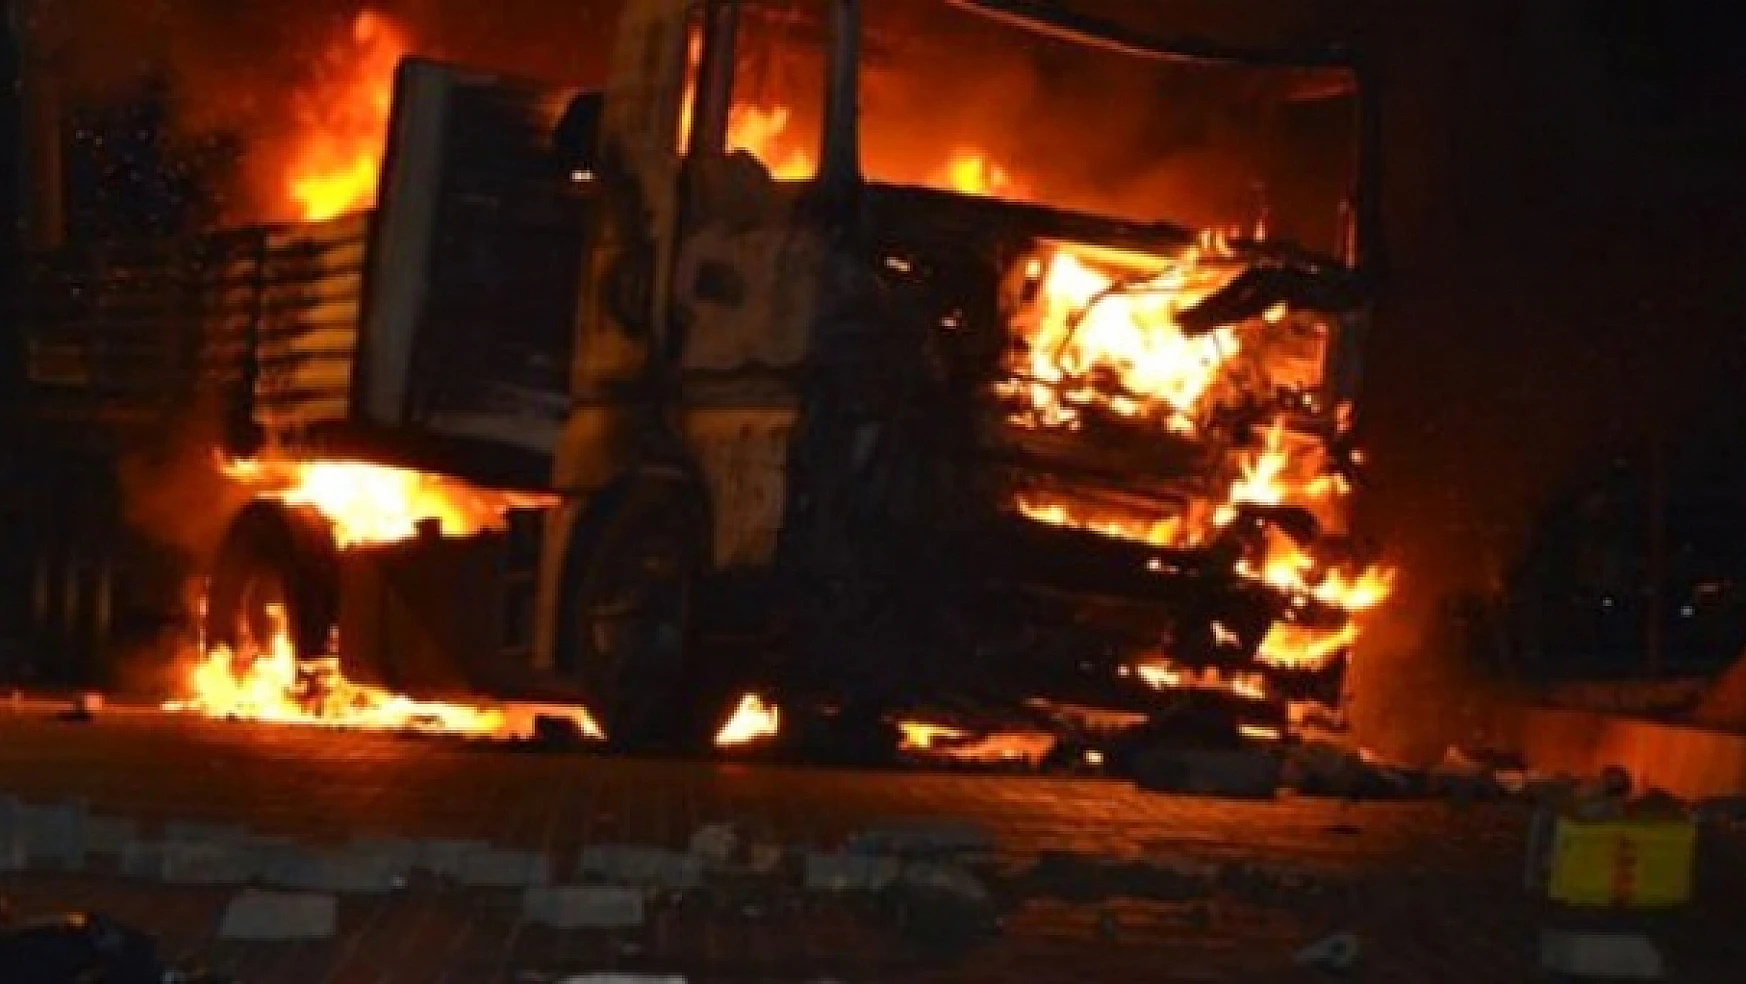 PKK yol kesip, araç yaktı